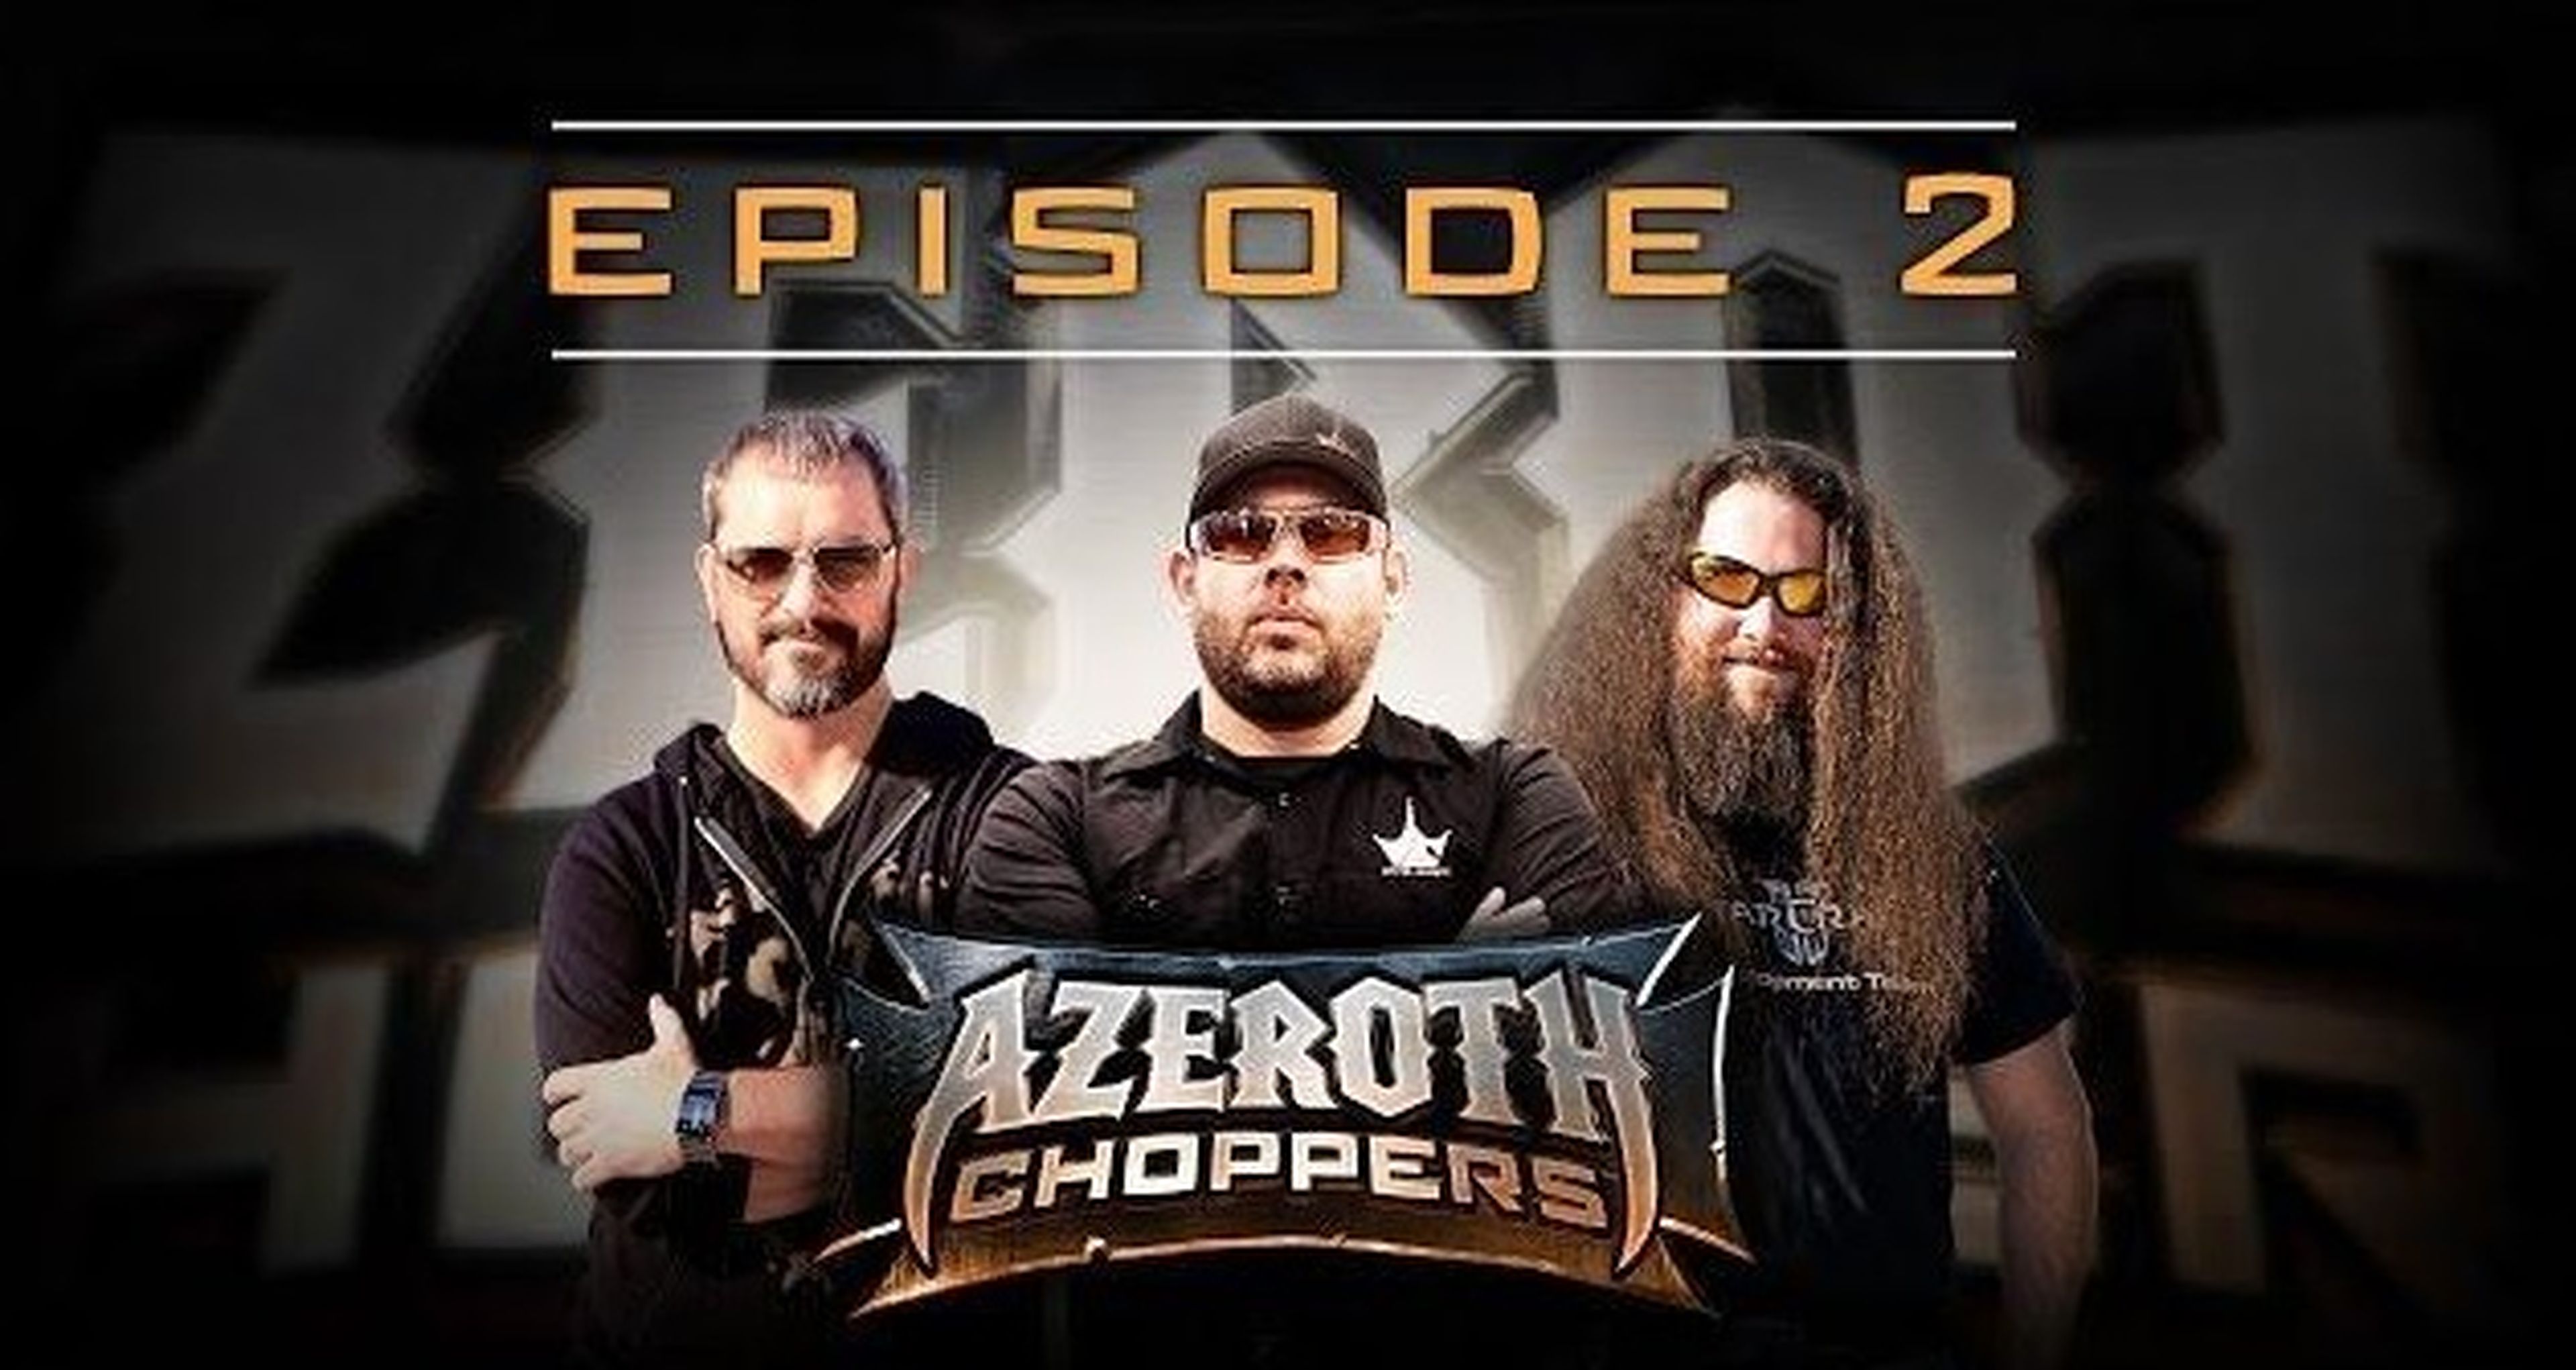 Episodio 2 de Azeroth Choppers